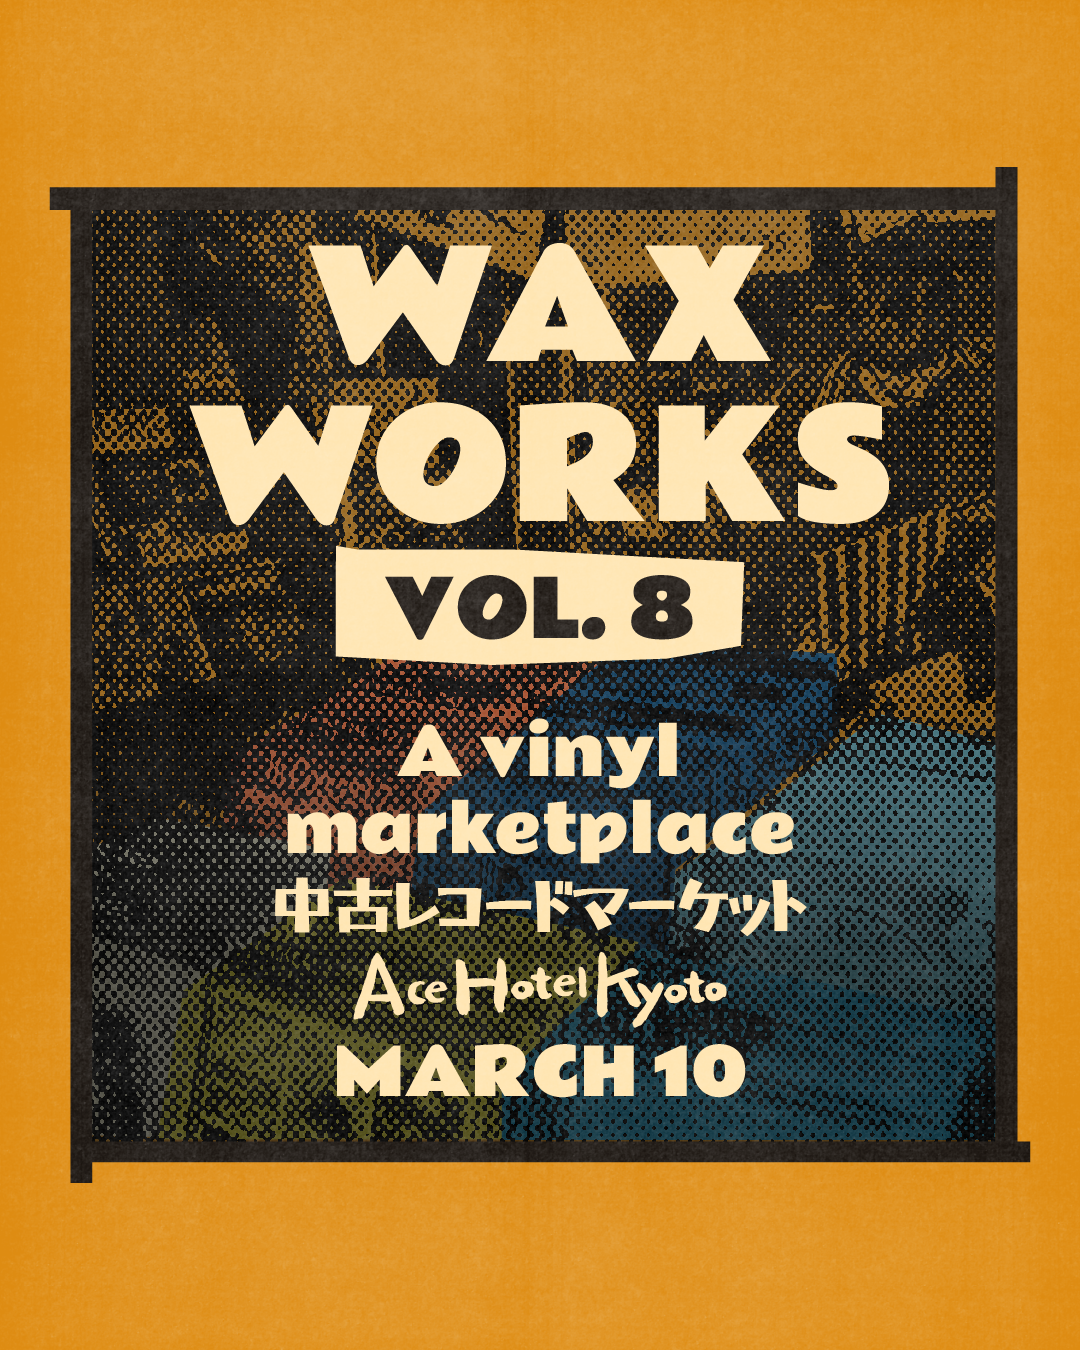 Wax Works Vincy Market Flyer